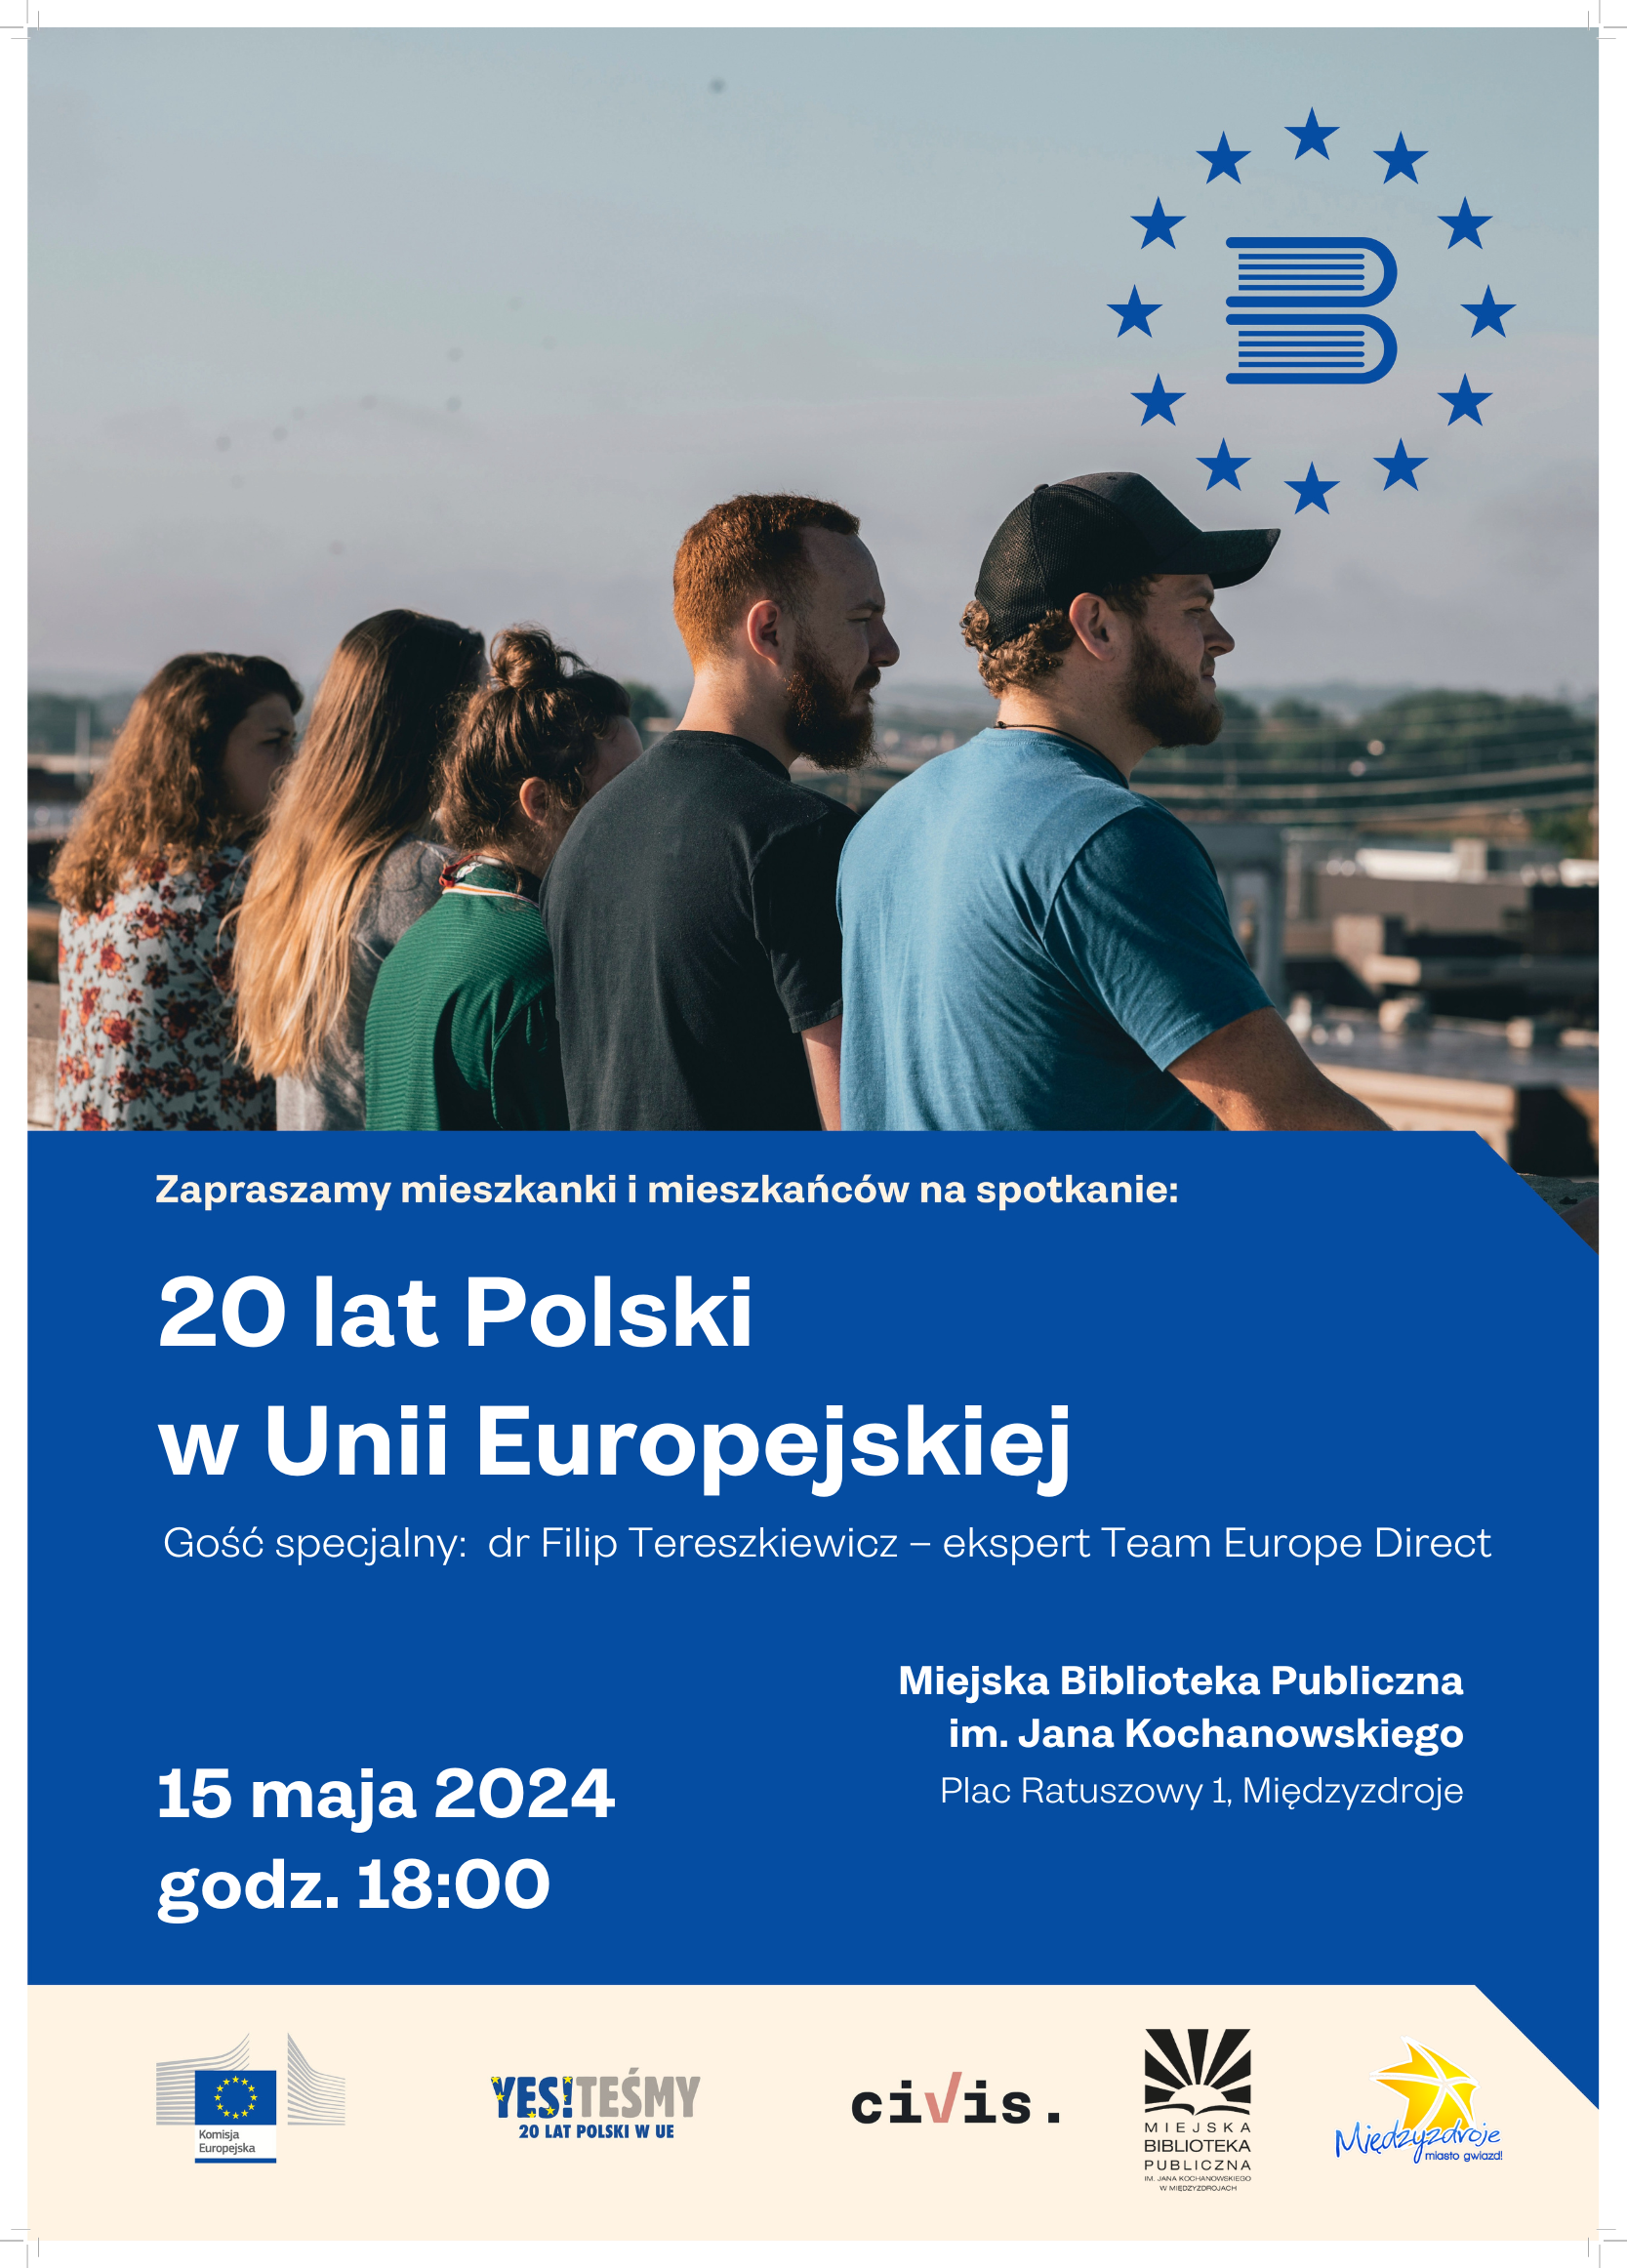 Spotkanie pt. „20 lat Polski w Unii Europejskiej” w międzyzdrojskiej bibliotece - 15 maja 2024 r.